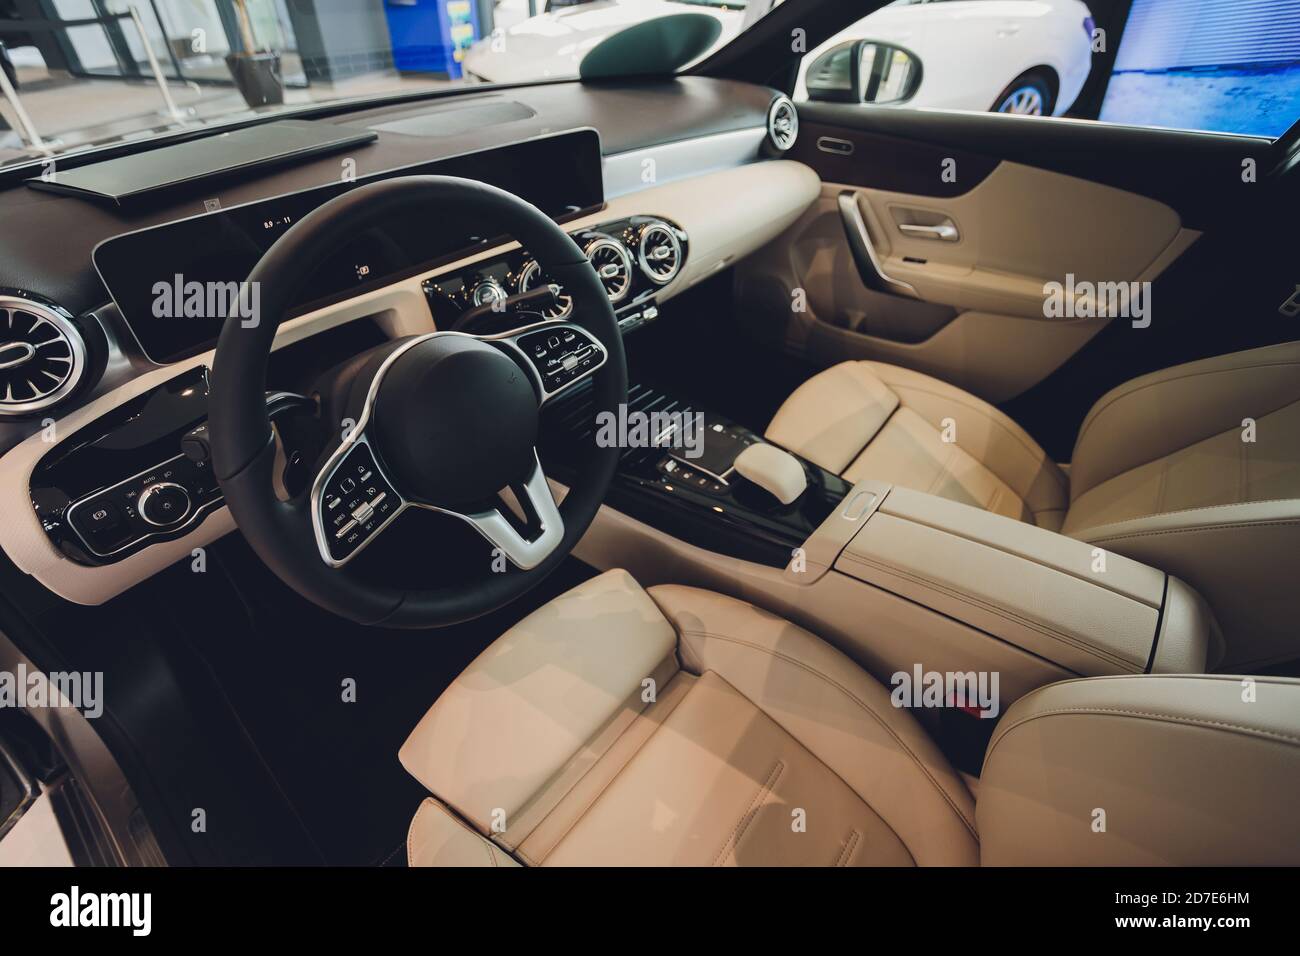 Innenansicht des Autos mit Ledersalon Stockfotografie - Alamy